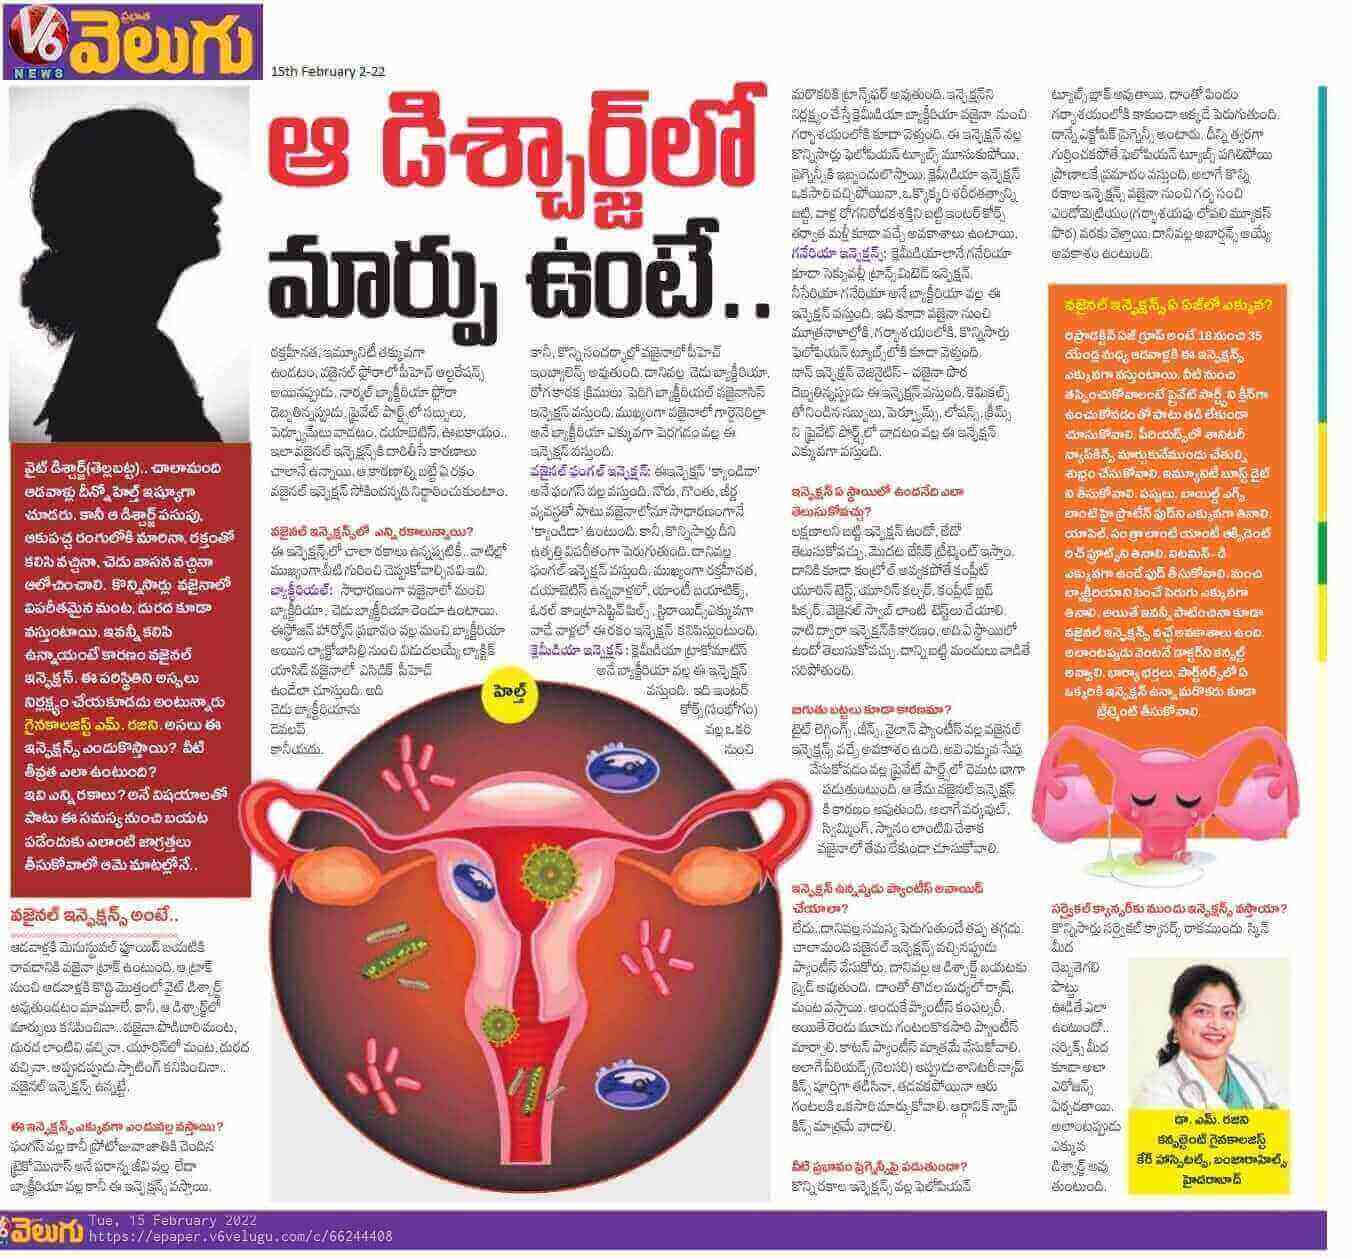 مقالات عن مشاكل أمراض النساء للدكتور موثيني راجيني - استشاري أول في أمراض النساء والتوليد وجراحة المناظير وأخصائي العقم